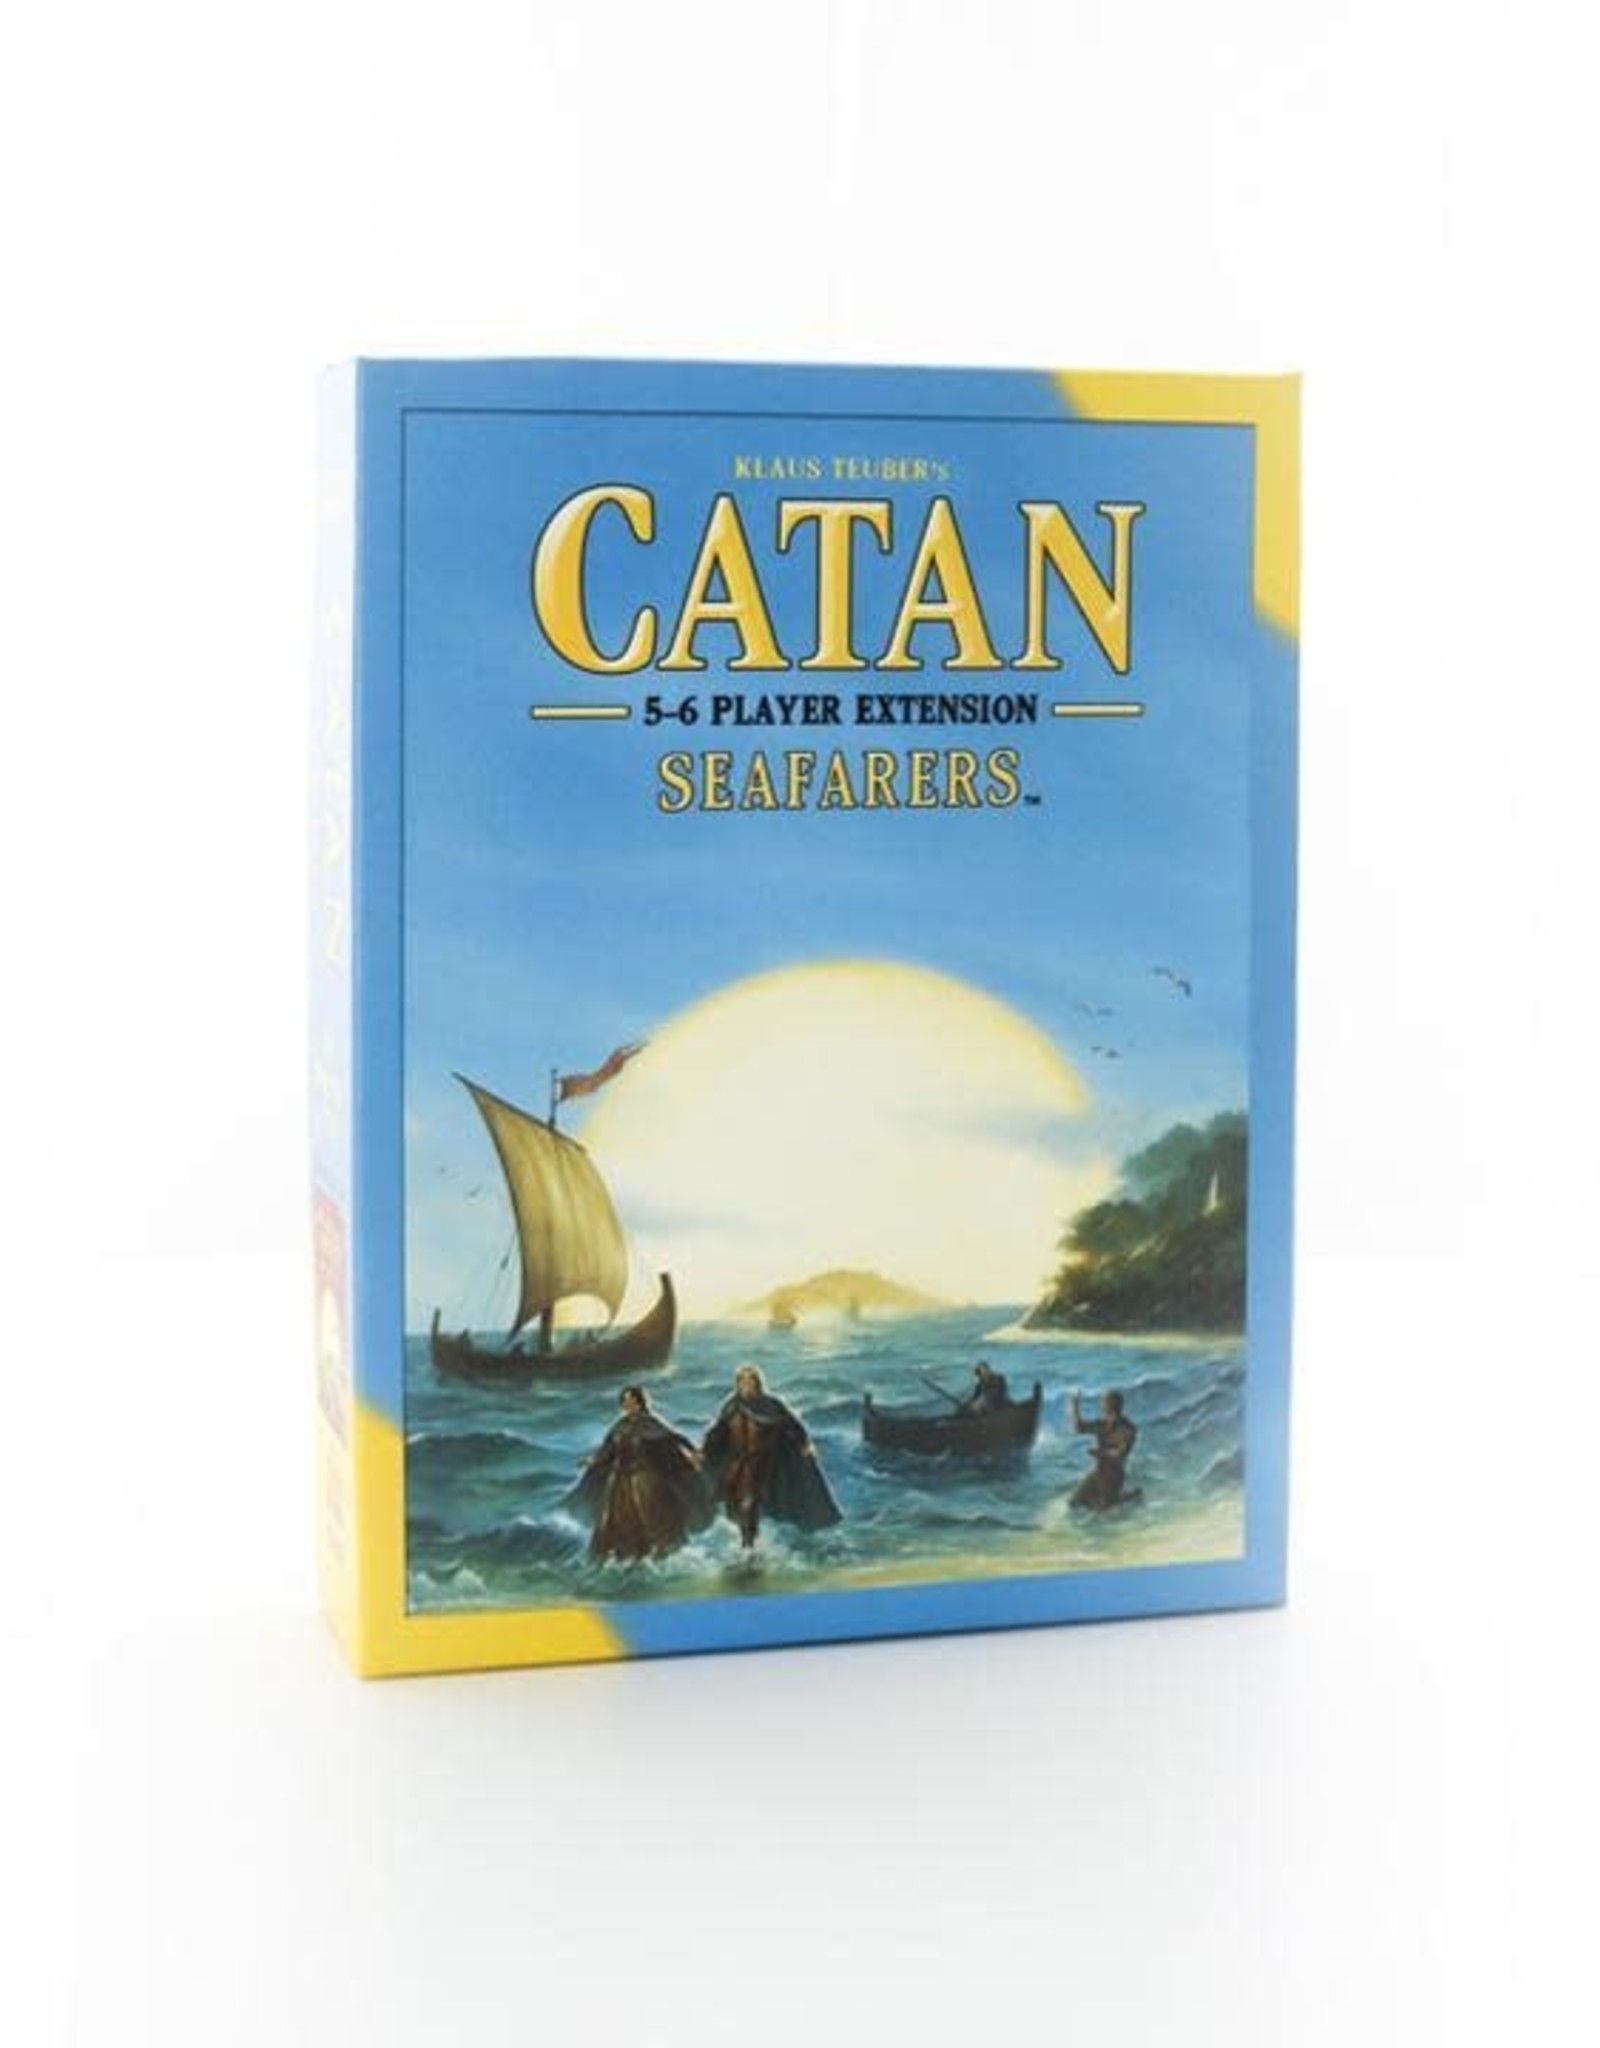 Catan Studio Catan (Seafarers 5-6 Player Extension)